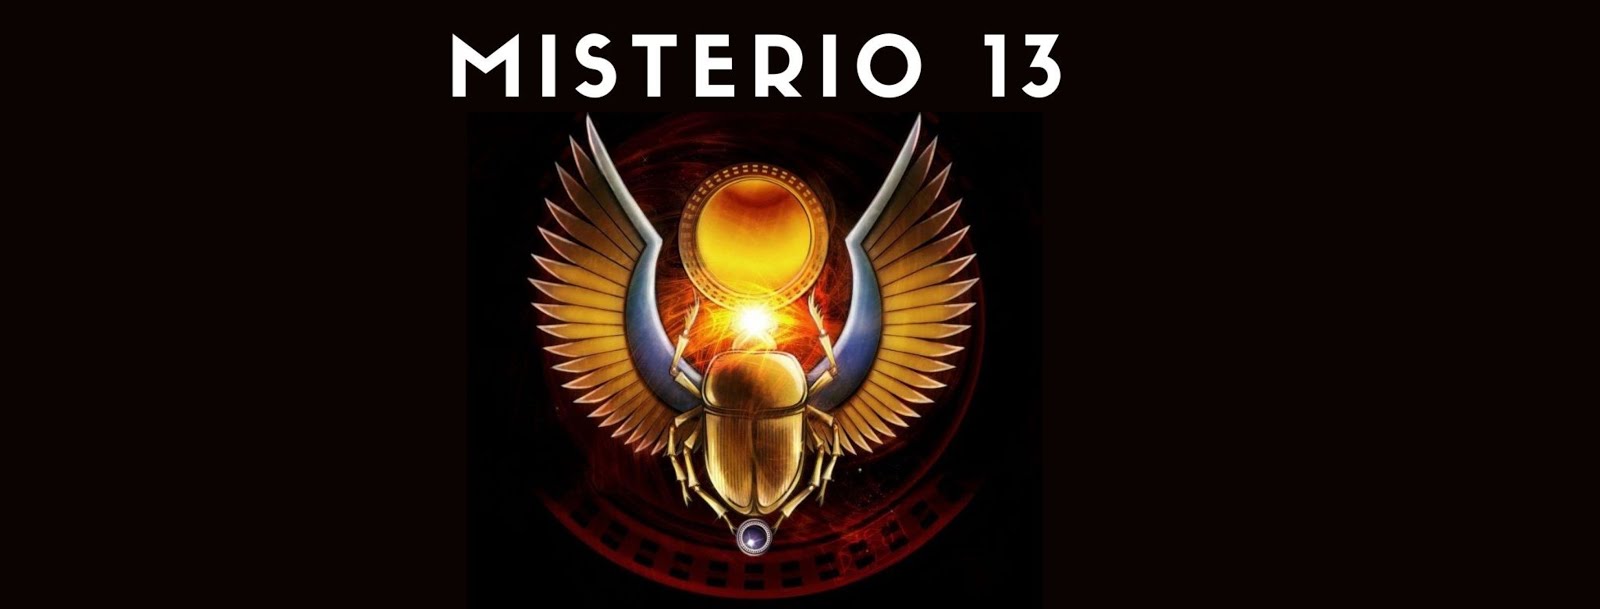 MISTERIO 13